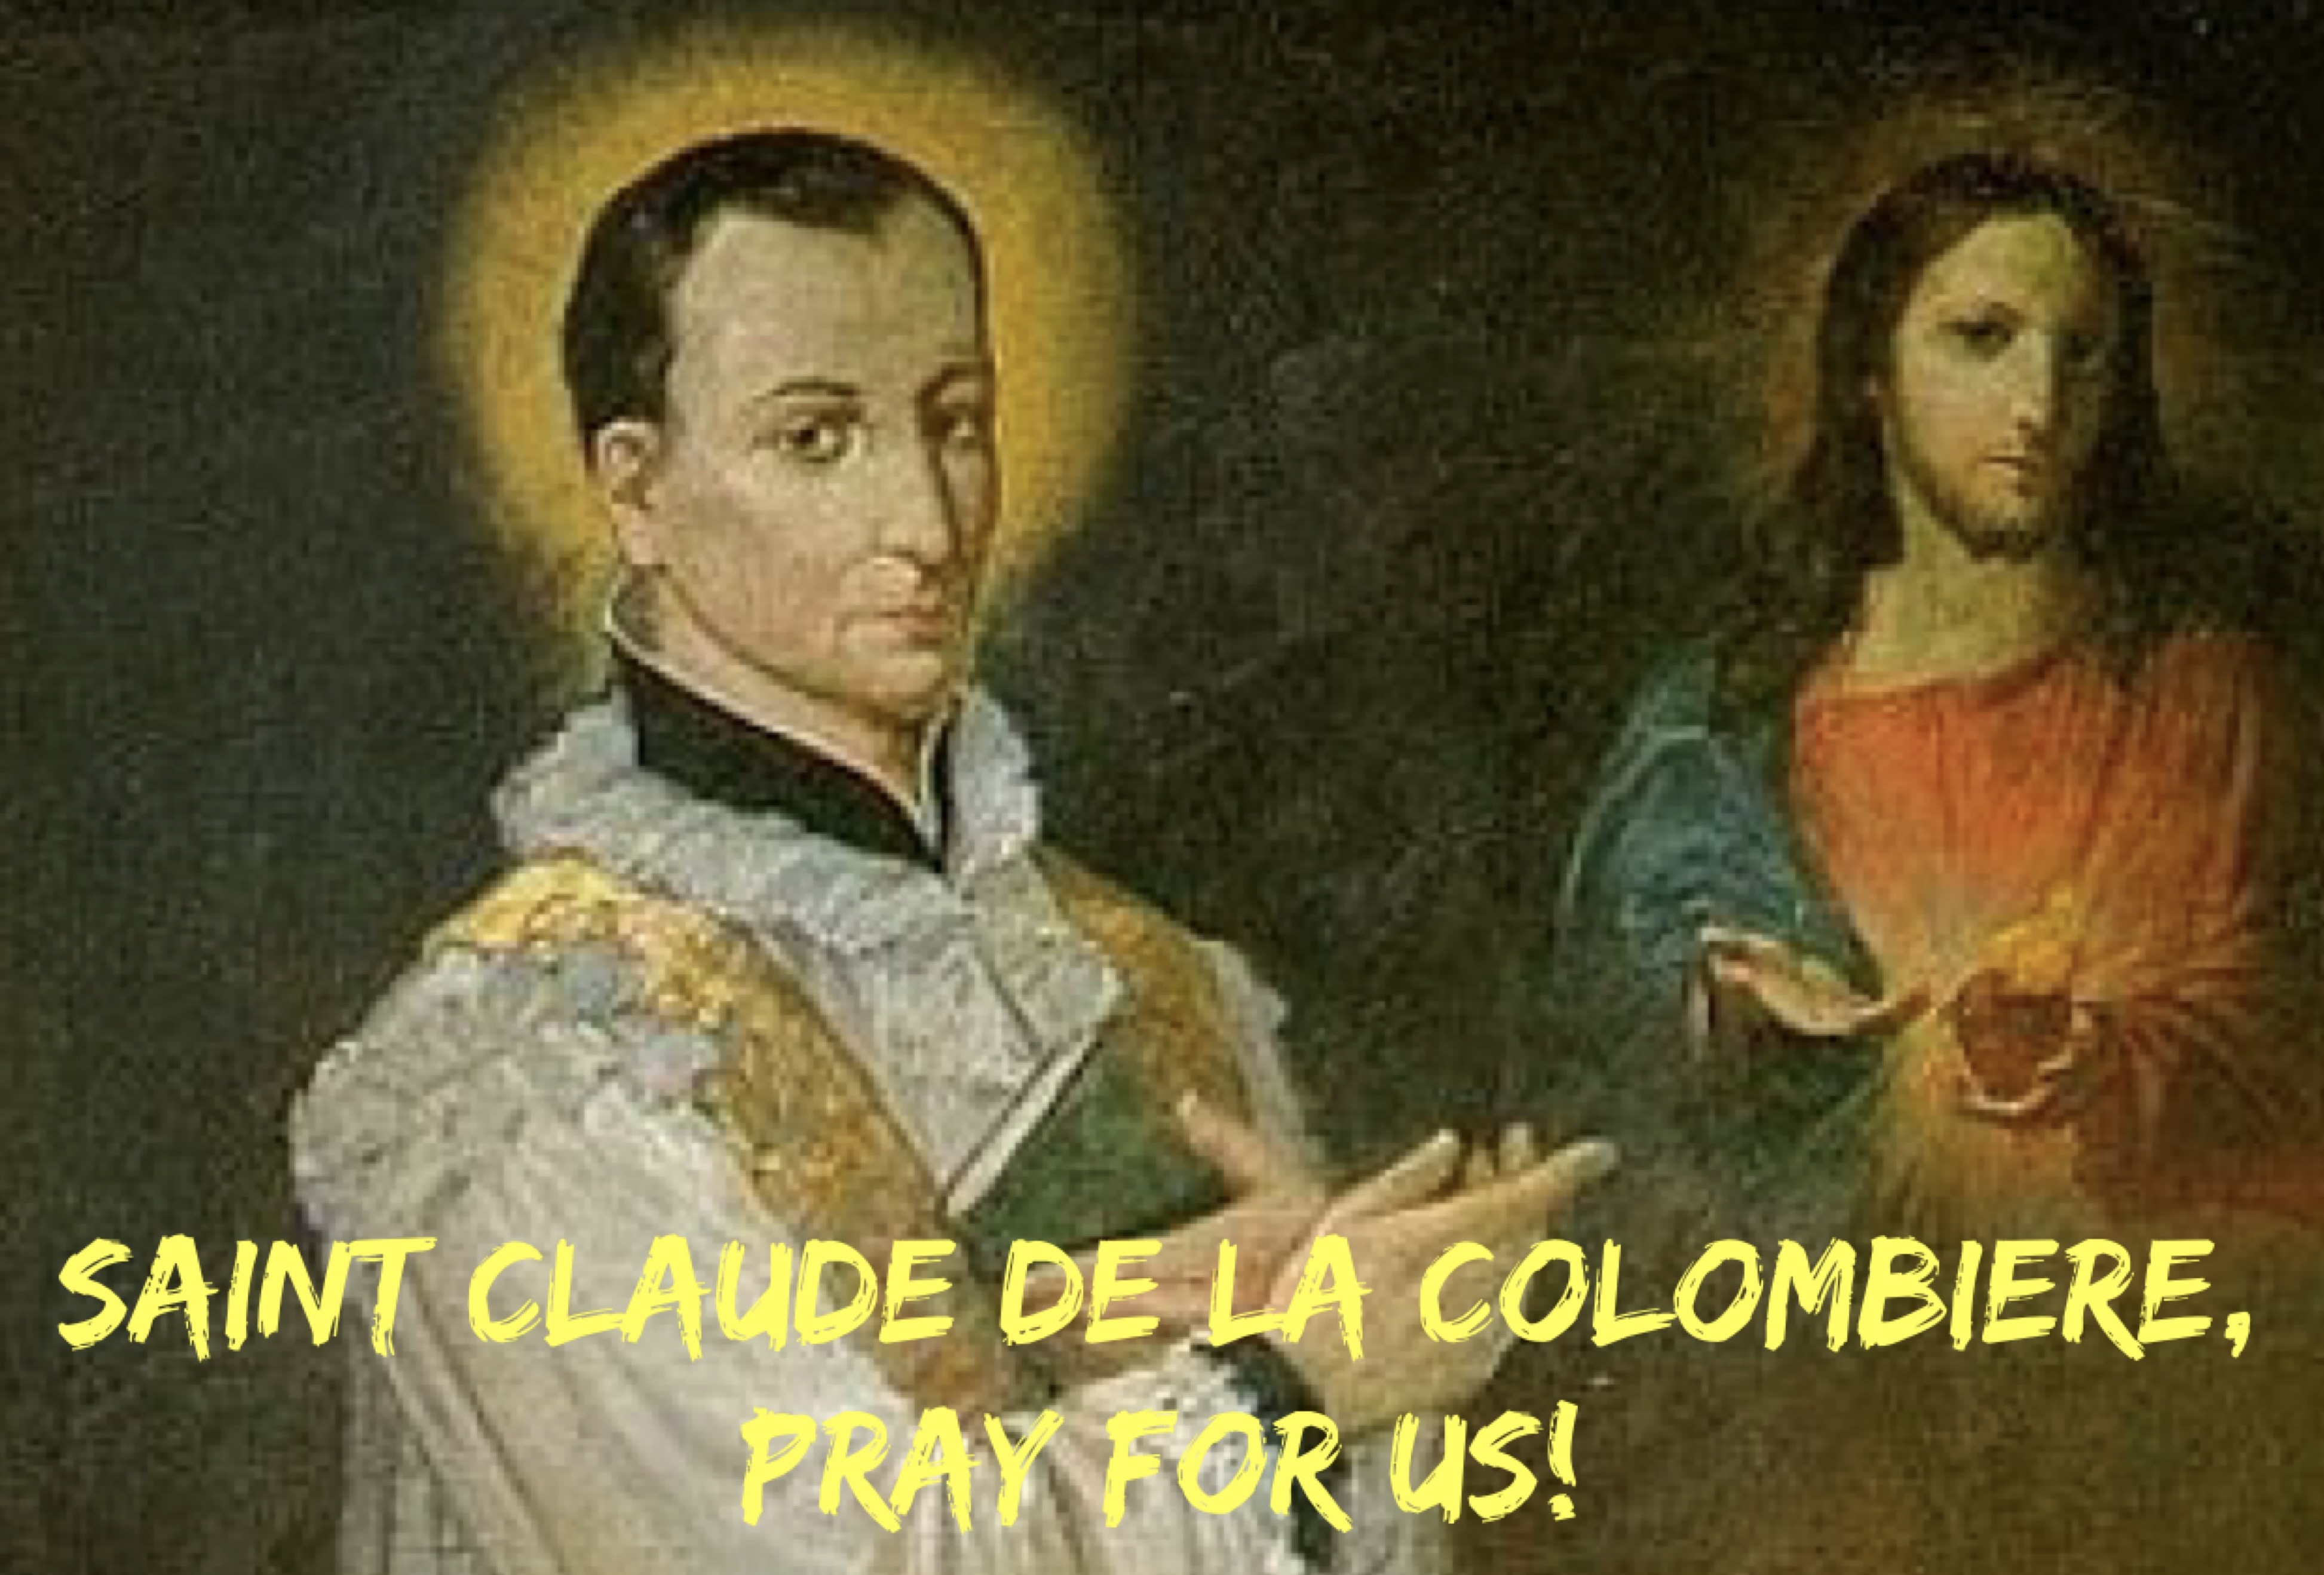 15th February – Saint Claude de la Colombiere